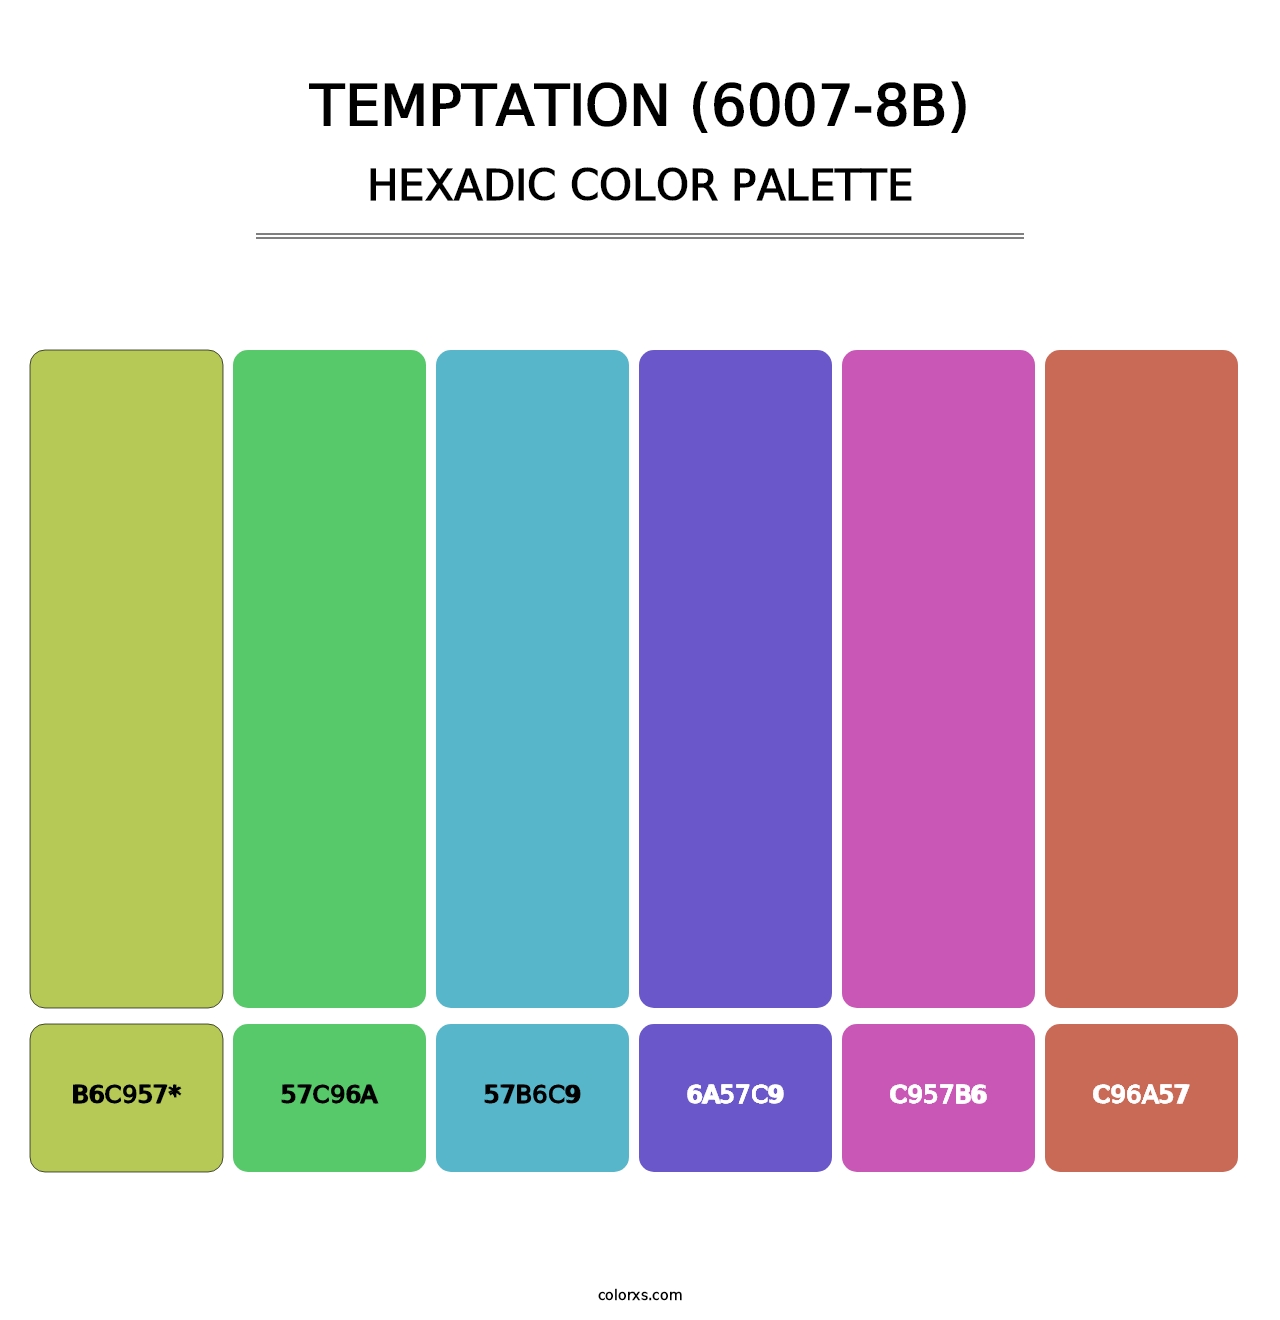 Temptation (6007-8B) - Hexadic Color Palette